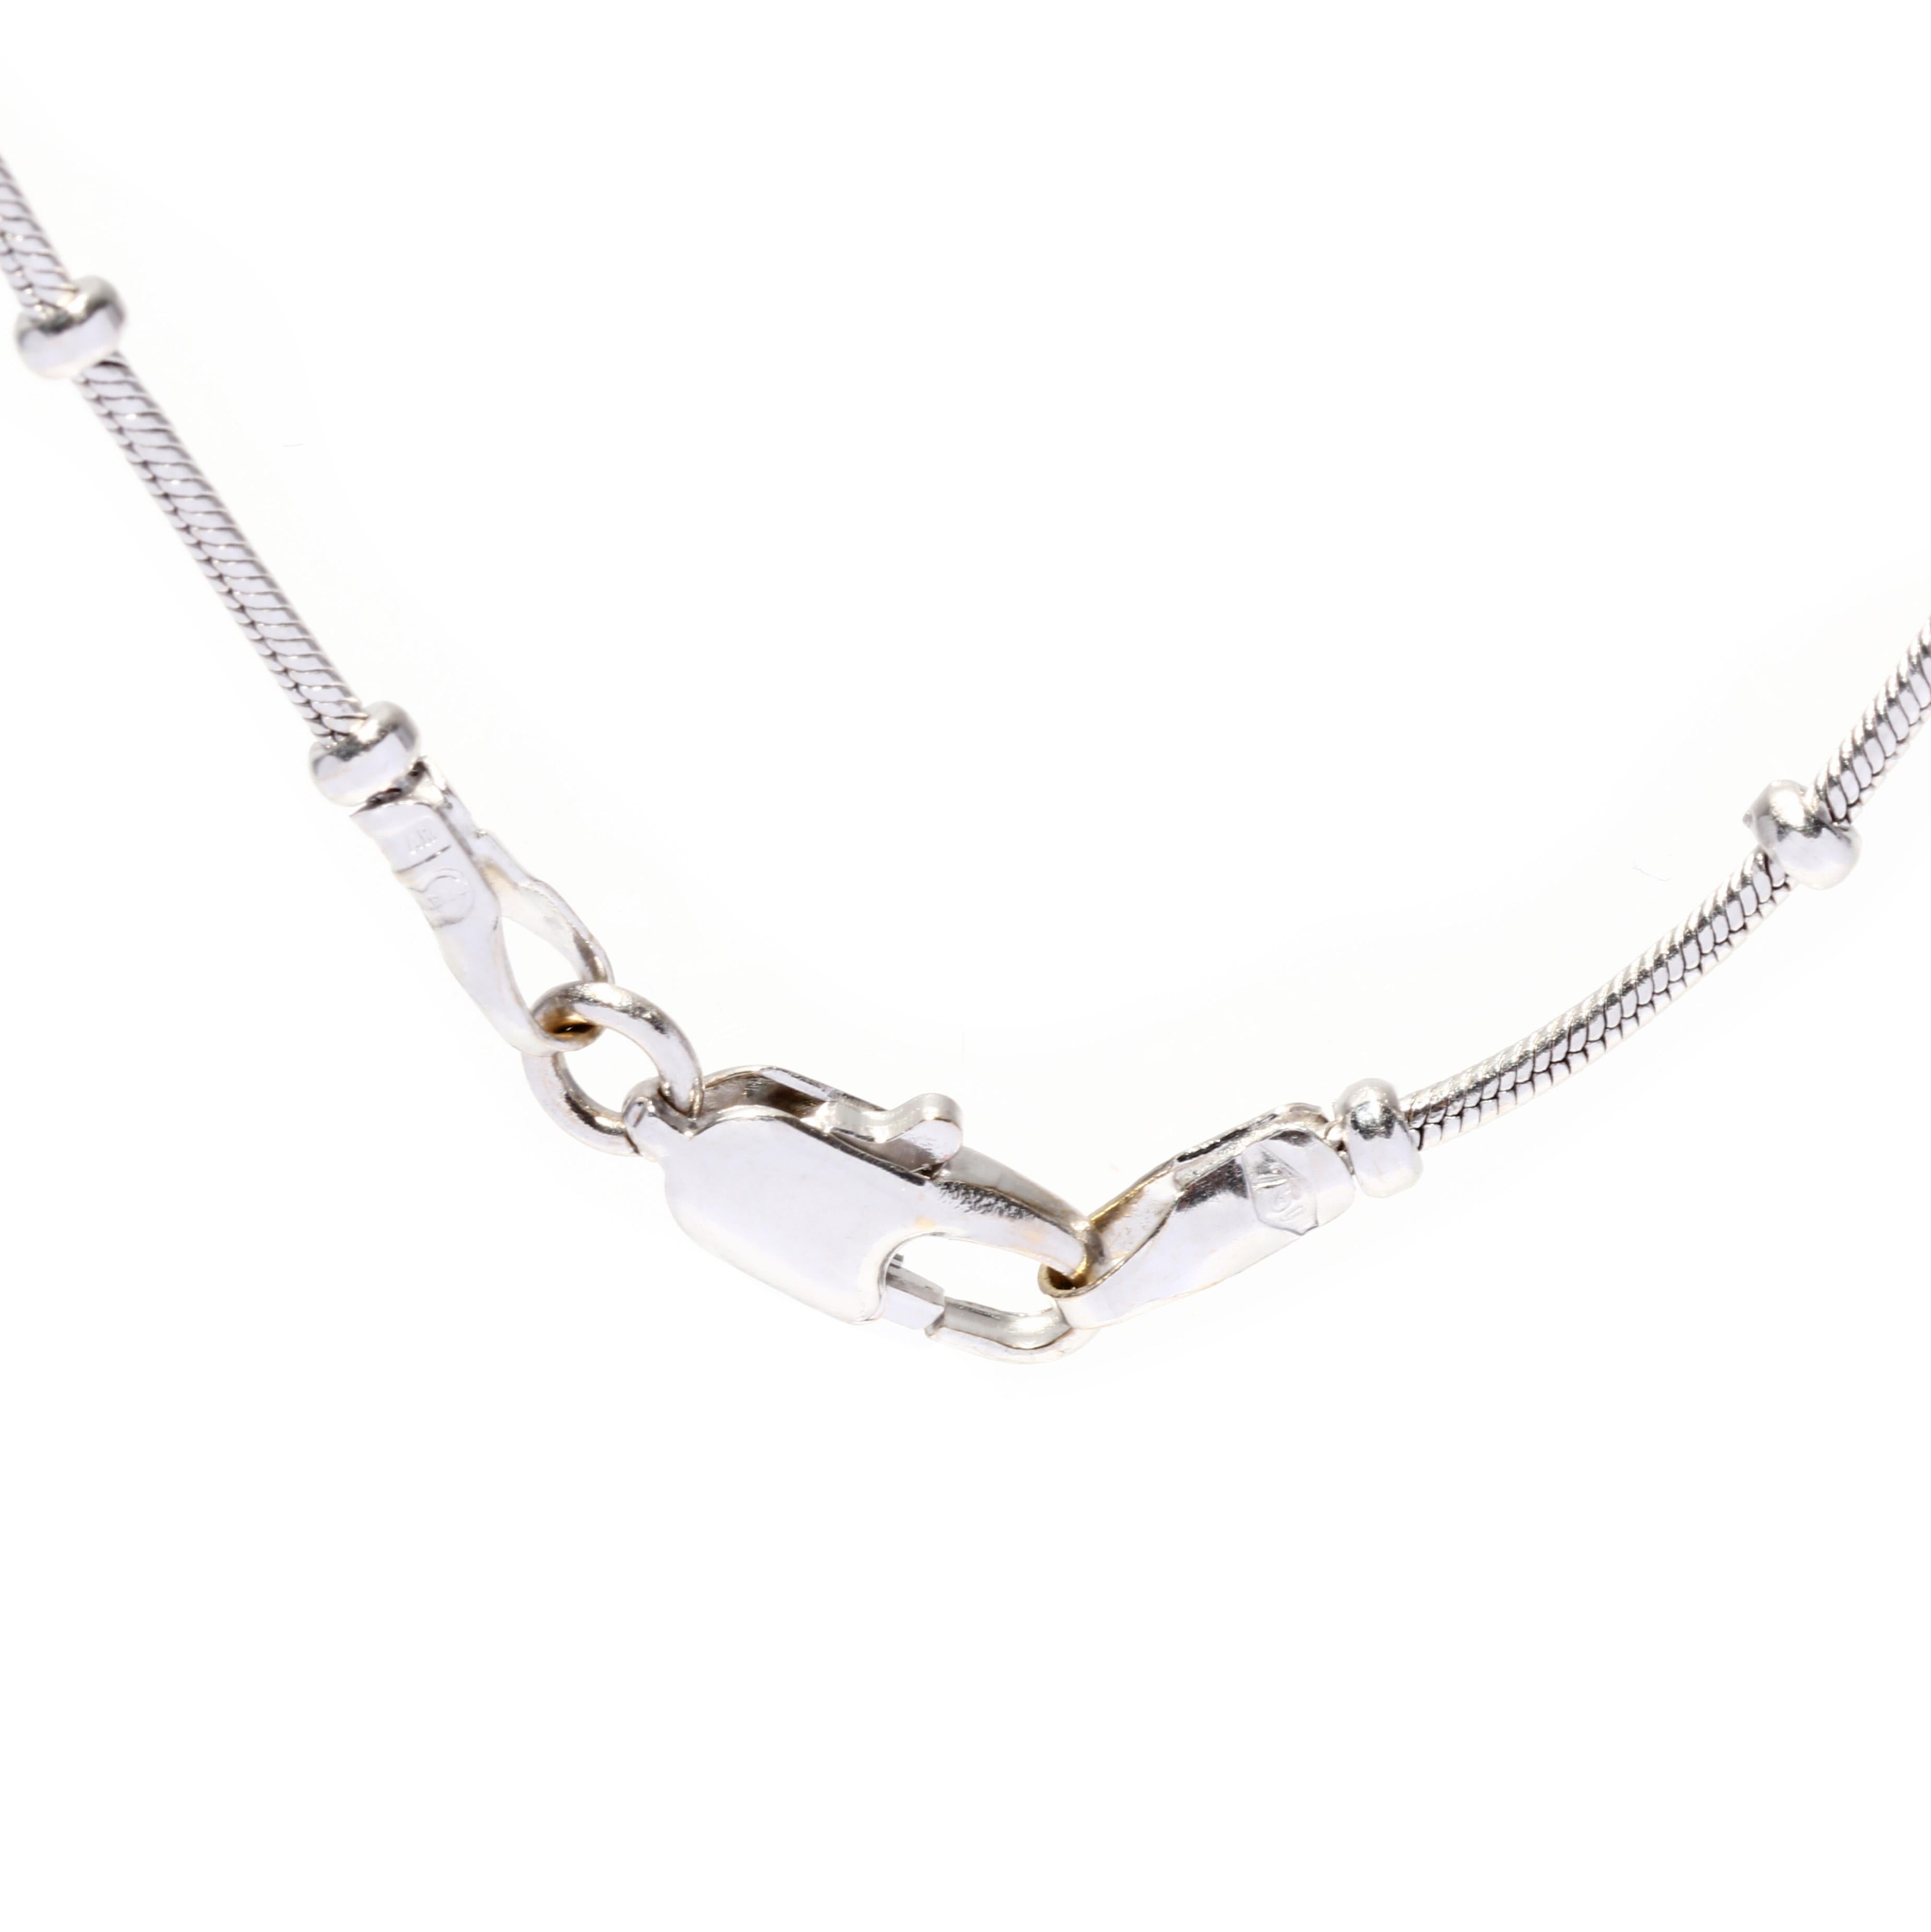 Women's or Men's  Vintage Bead Chain, 18K White Gold, Snake Chain, Skinny Pendant Chain